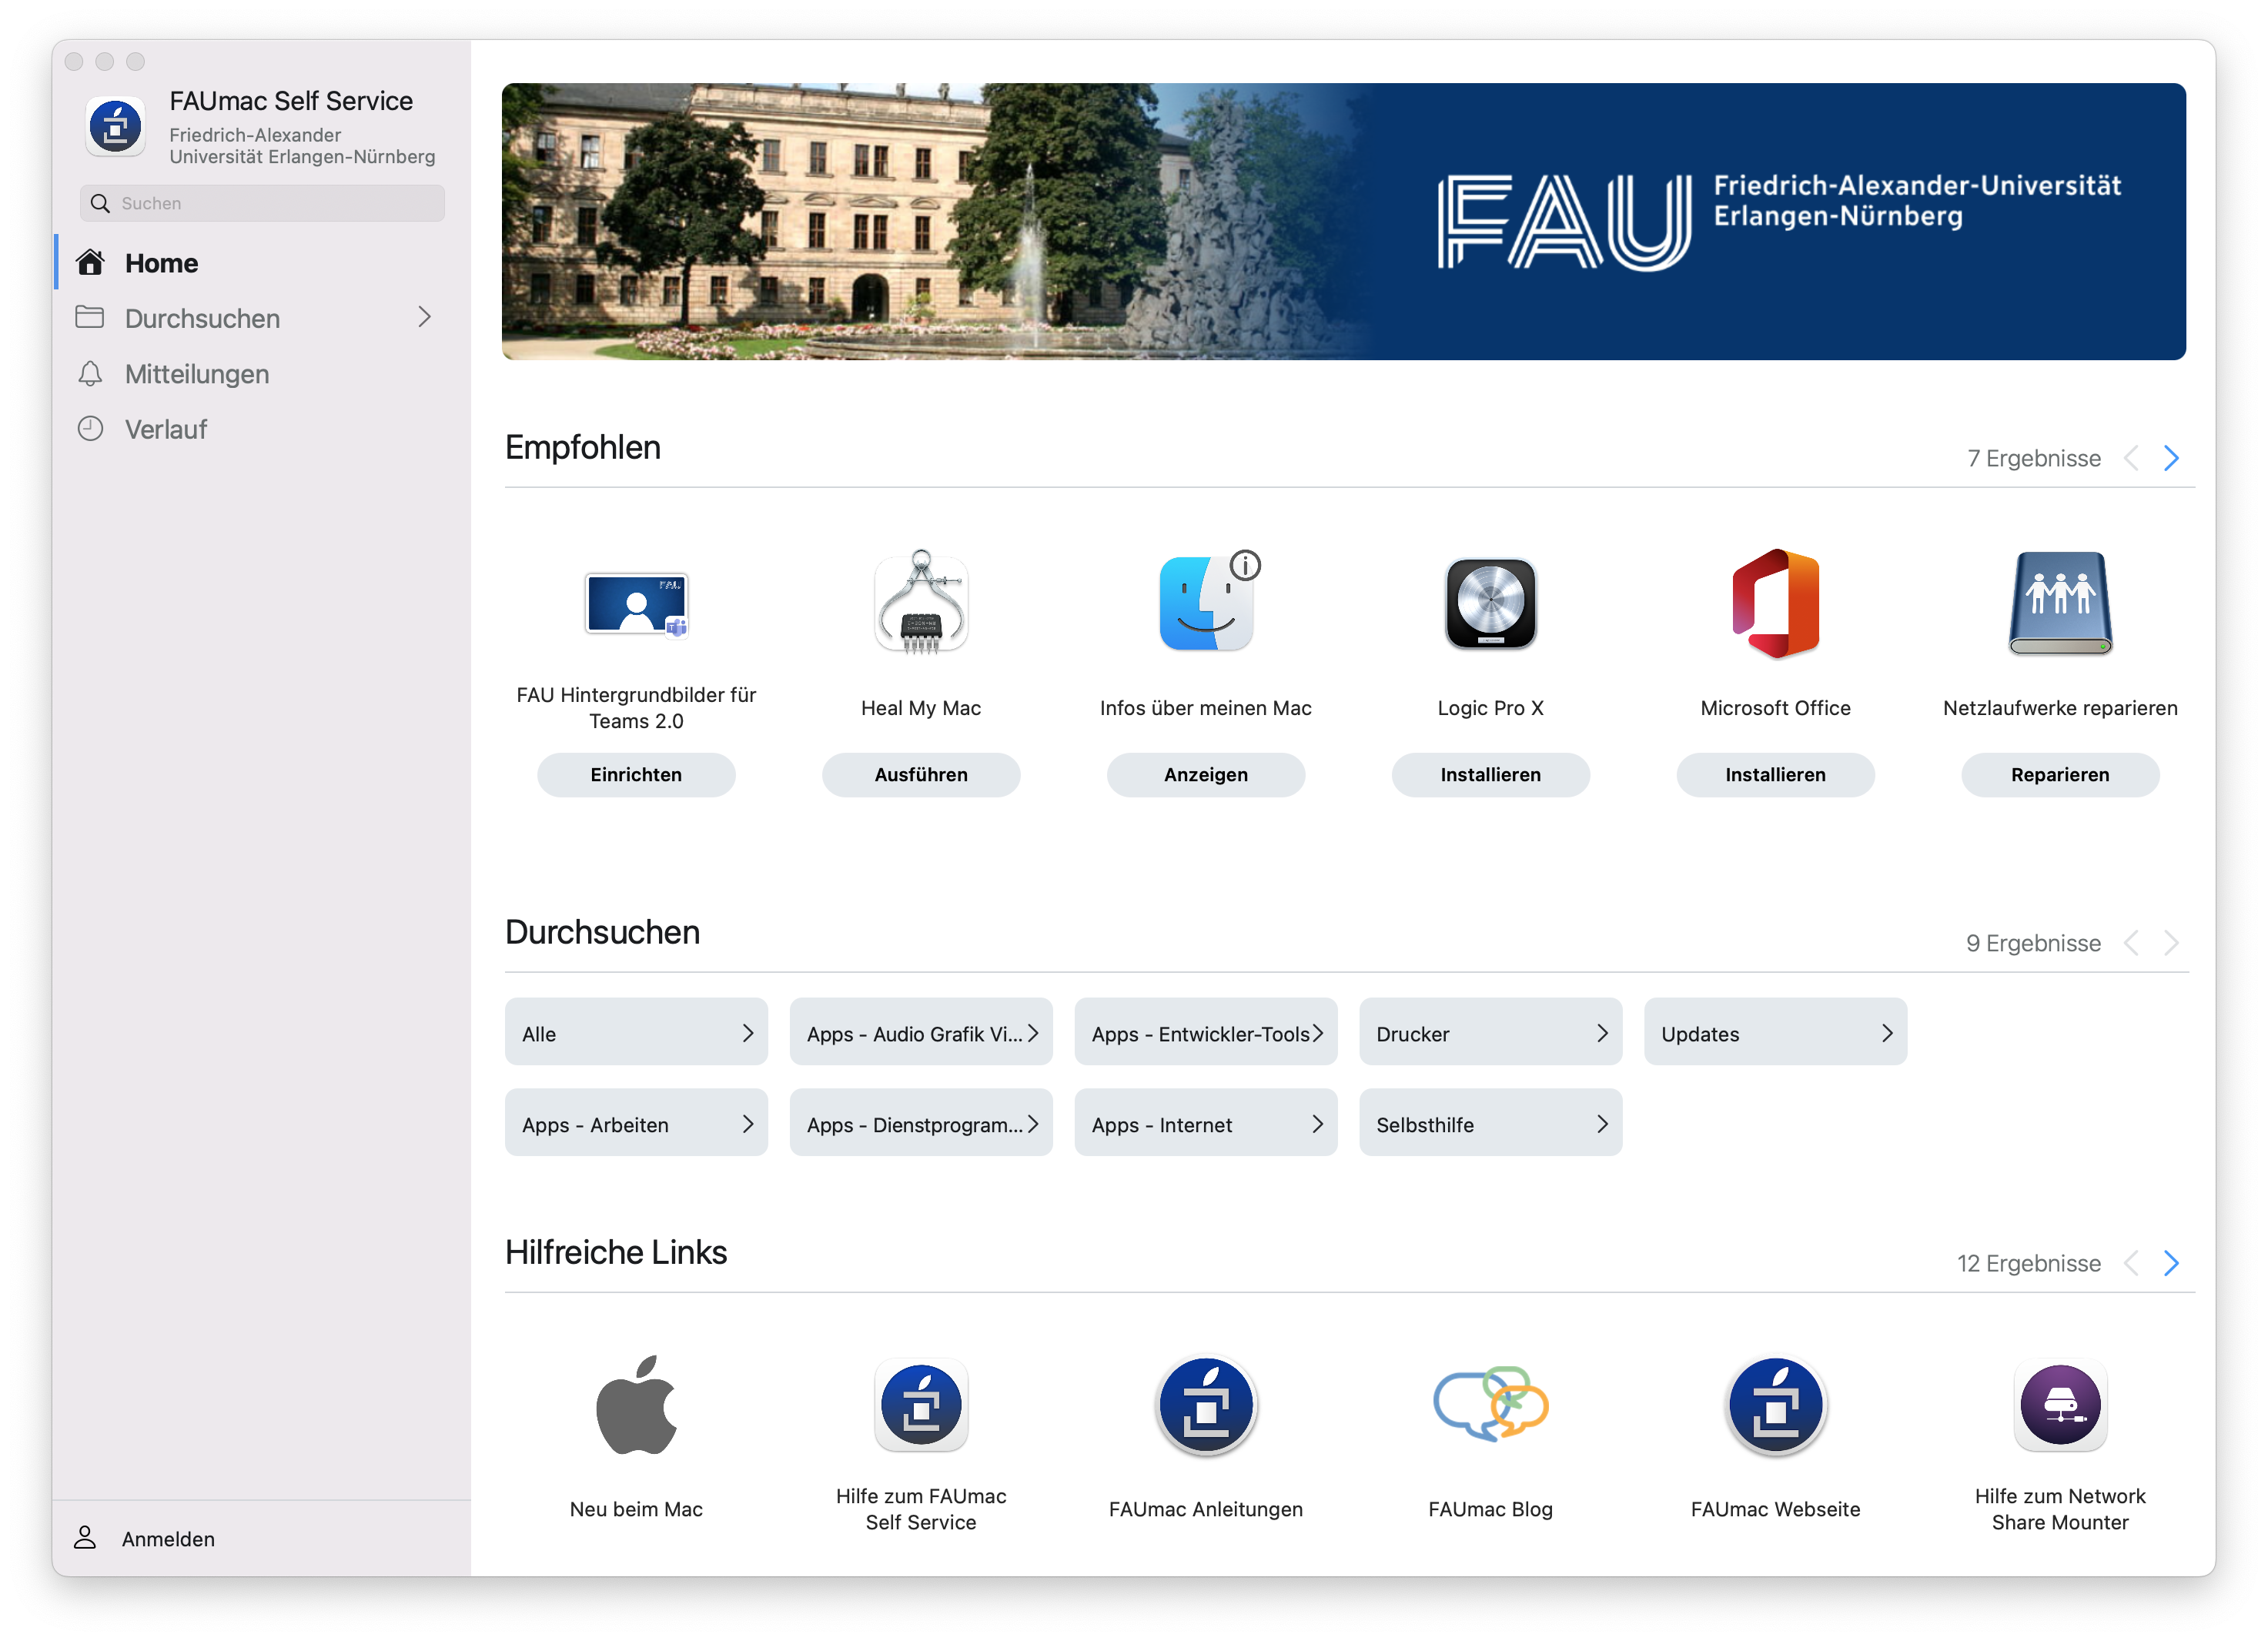 Das Bild zeigt die Hauptseite des FAUmac Self Service.